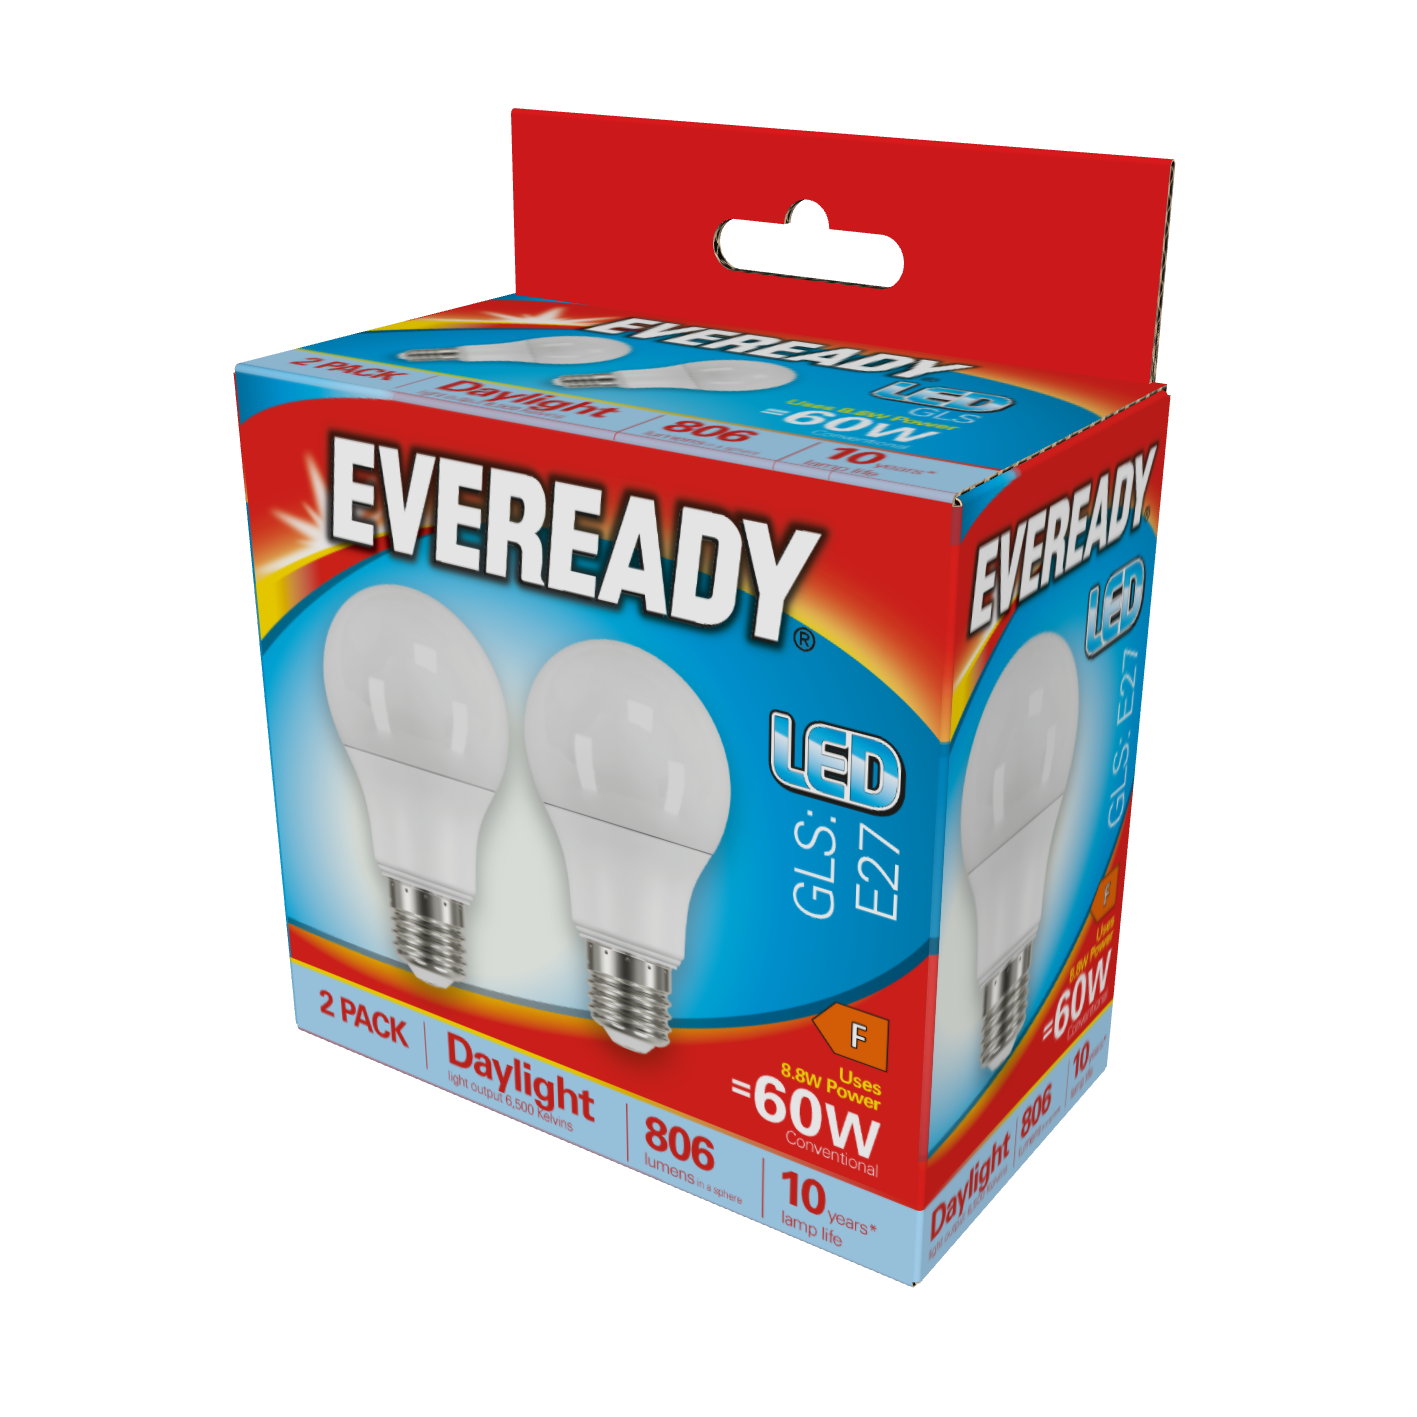 Eveready LED GLS E27 (ES) 806lm 8,8W 6.500K (Tageslicht), Box mit 2 Stück